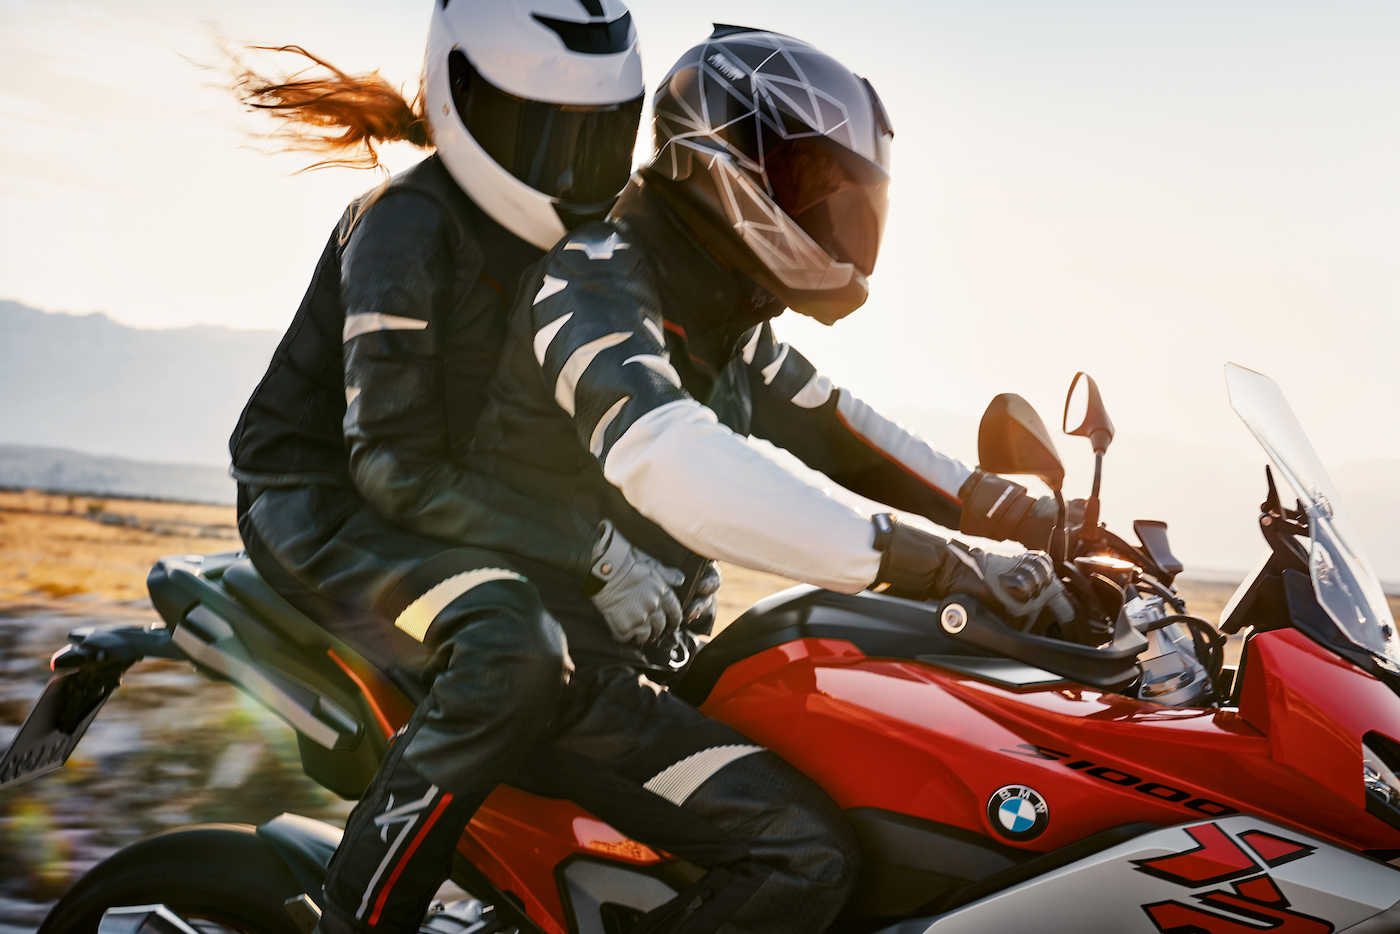 Ya está disponible para comercialización la nueva motocicleta BMW S1000XR en España